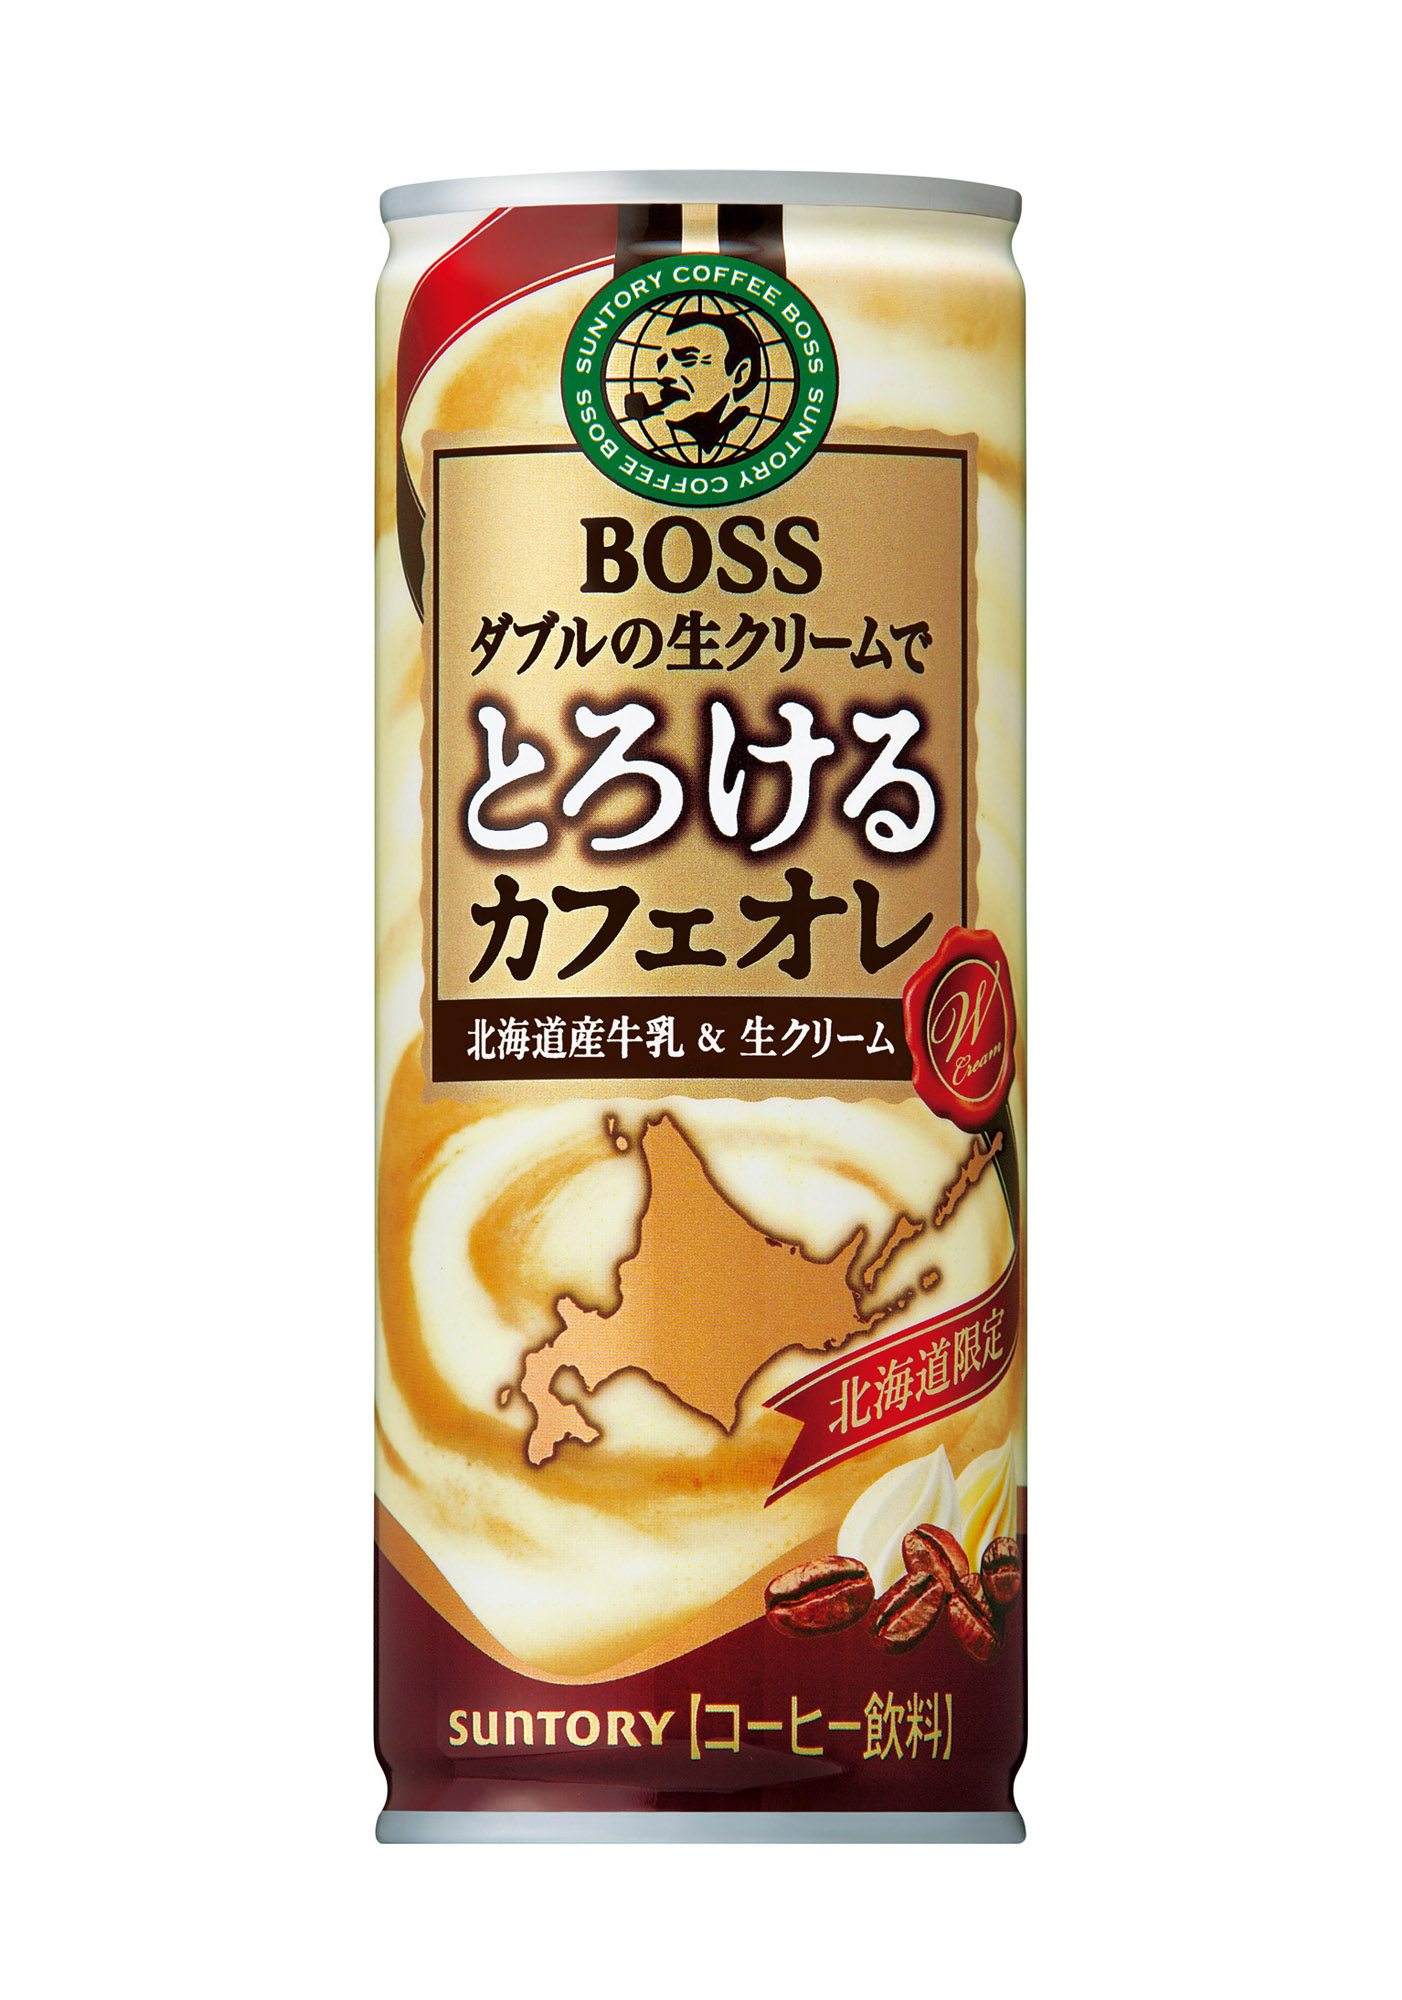 北海道限定 ボス とろけるカフェオレ 250g缶 新発売 ニュースリリース サントリー食品インターナショナル